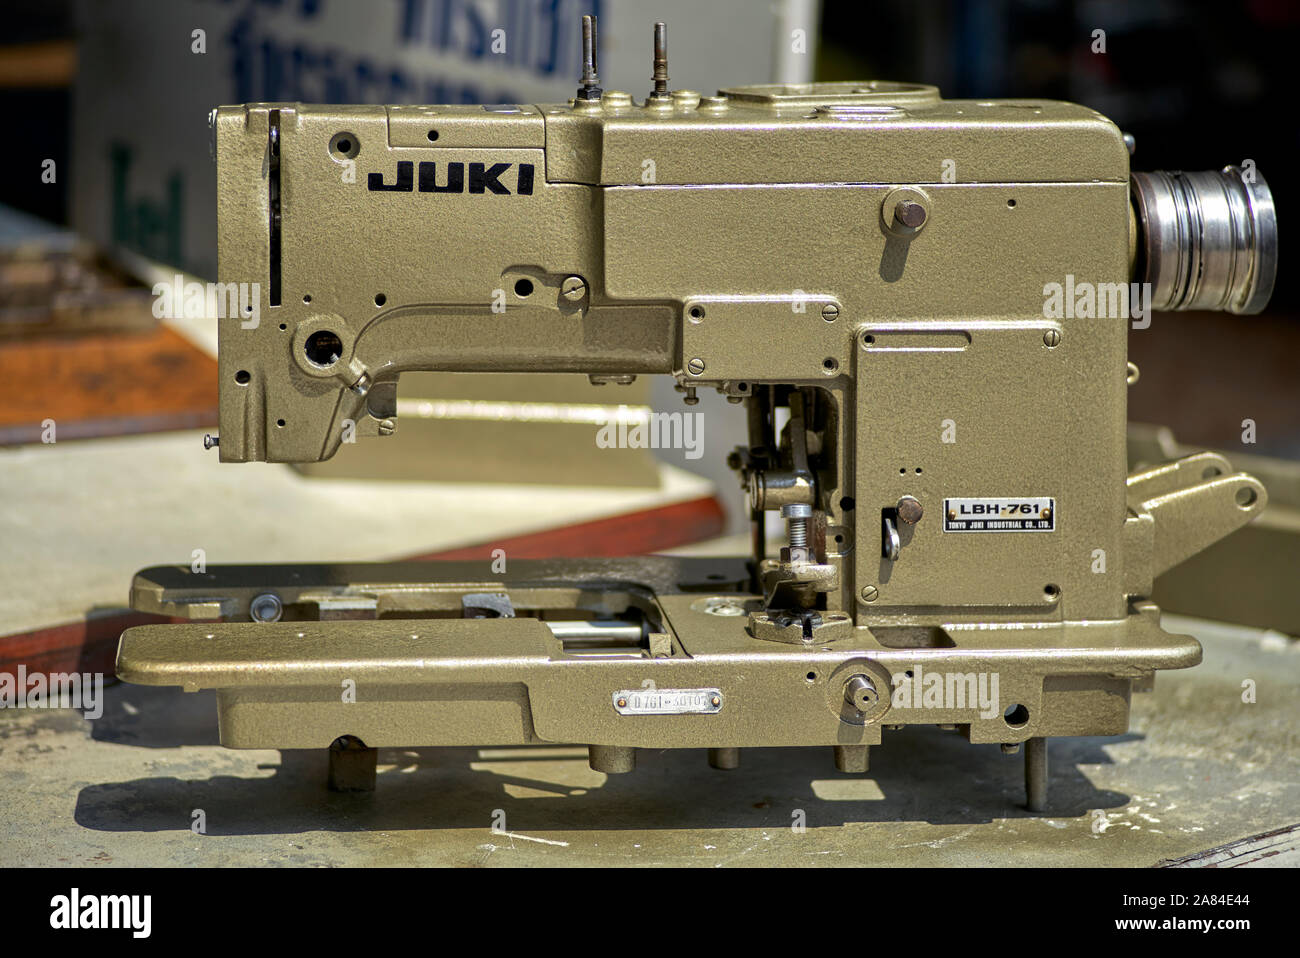 Vintage machine à coudre. Juki LBH 761 machine à coudre commerciale, fabriqué au Japon Banque D'Images